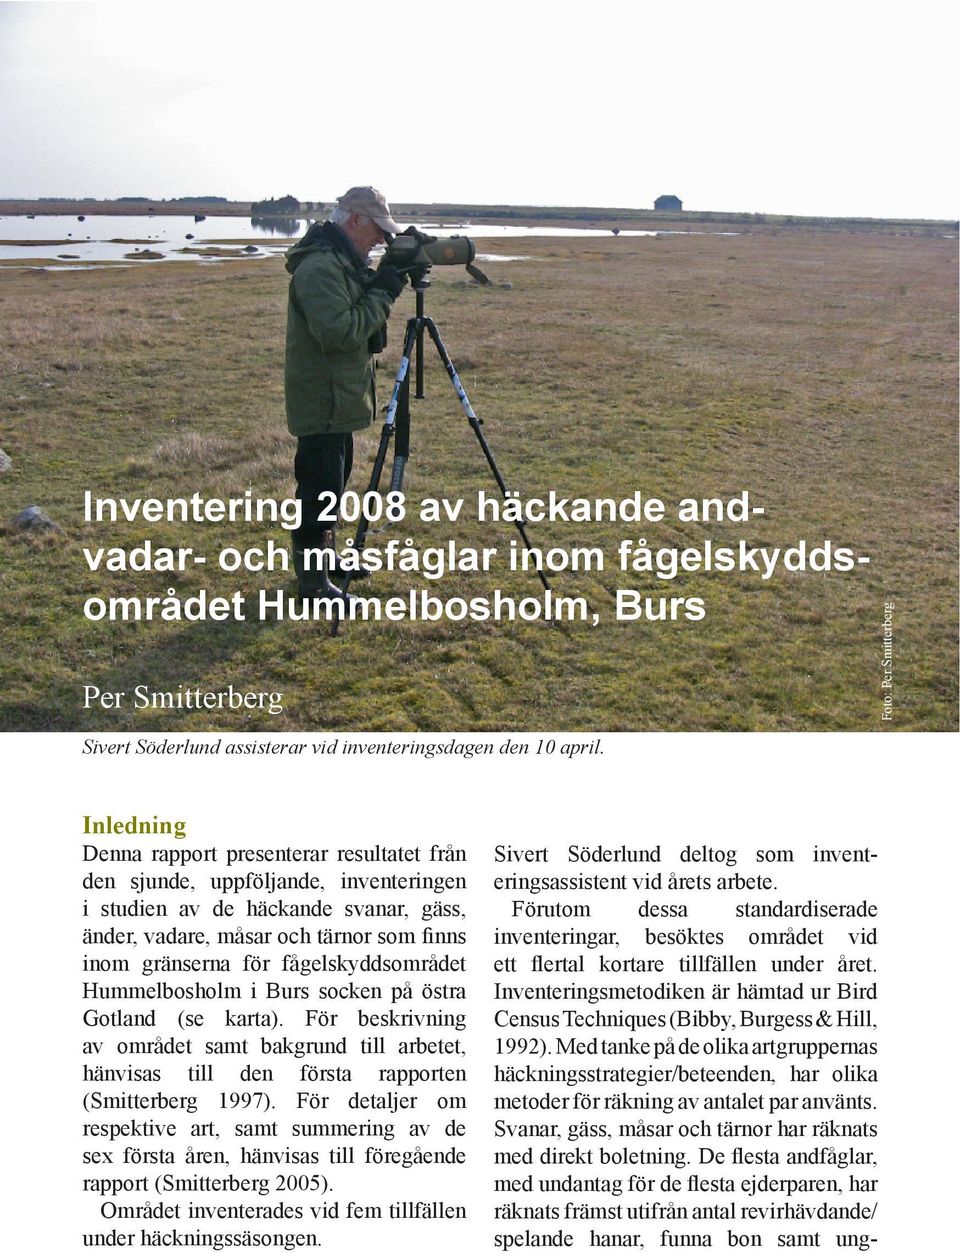 gränserna för fågelskyddsområdet Hummelbosholm i Burs socken på östra Gotland (se karta). För beskrivning av området samt bakgrund till arbetet, hänvisas till den första rapporten (Smitterberg 1997).